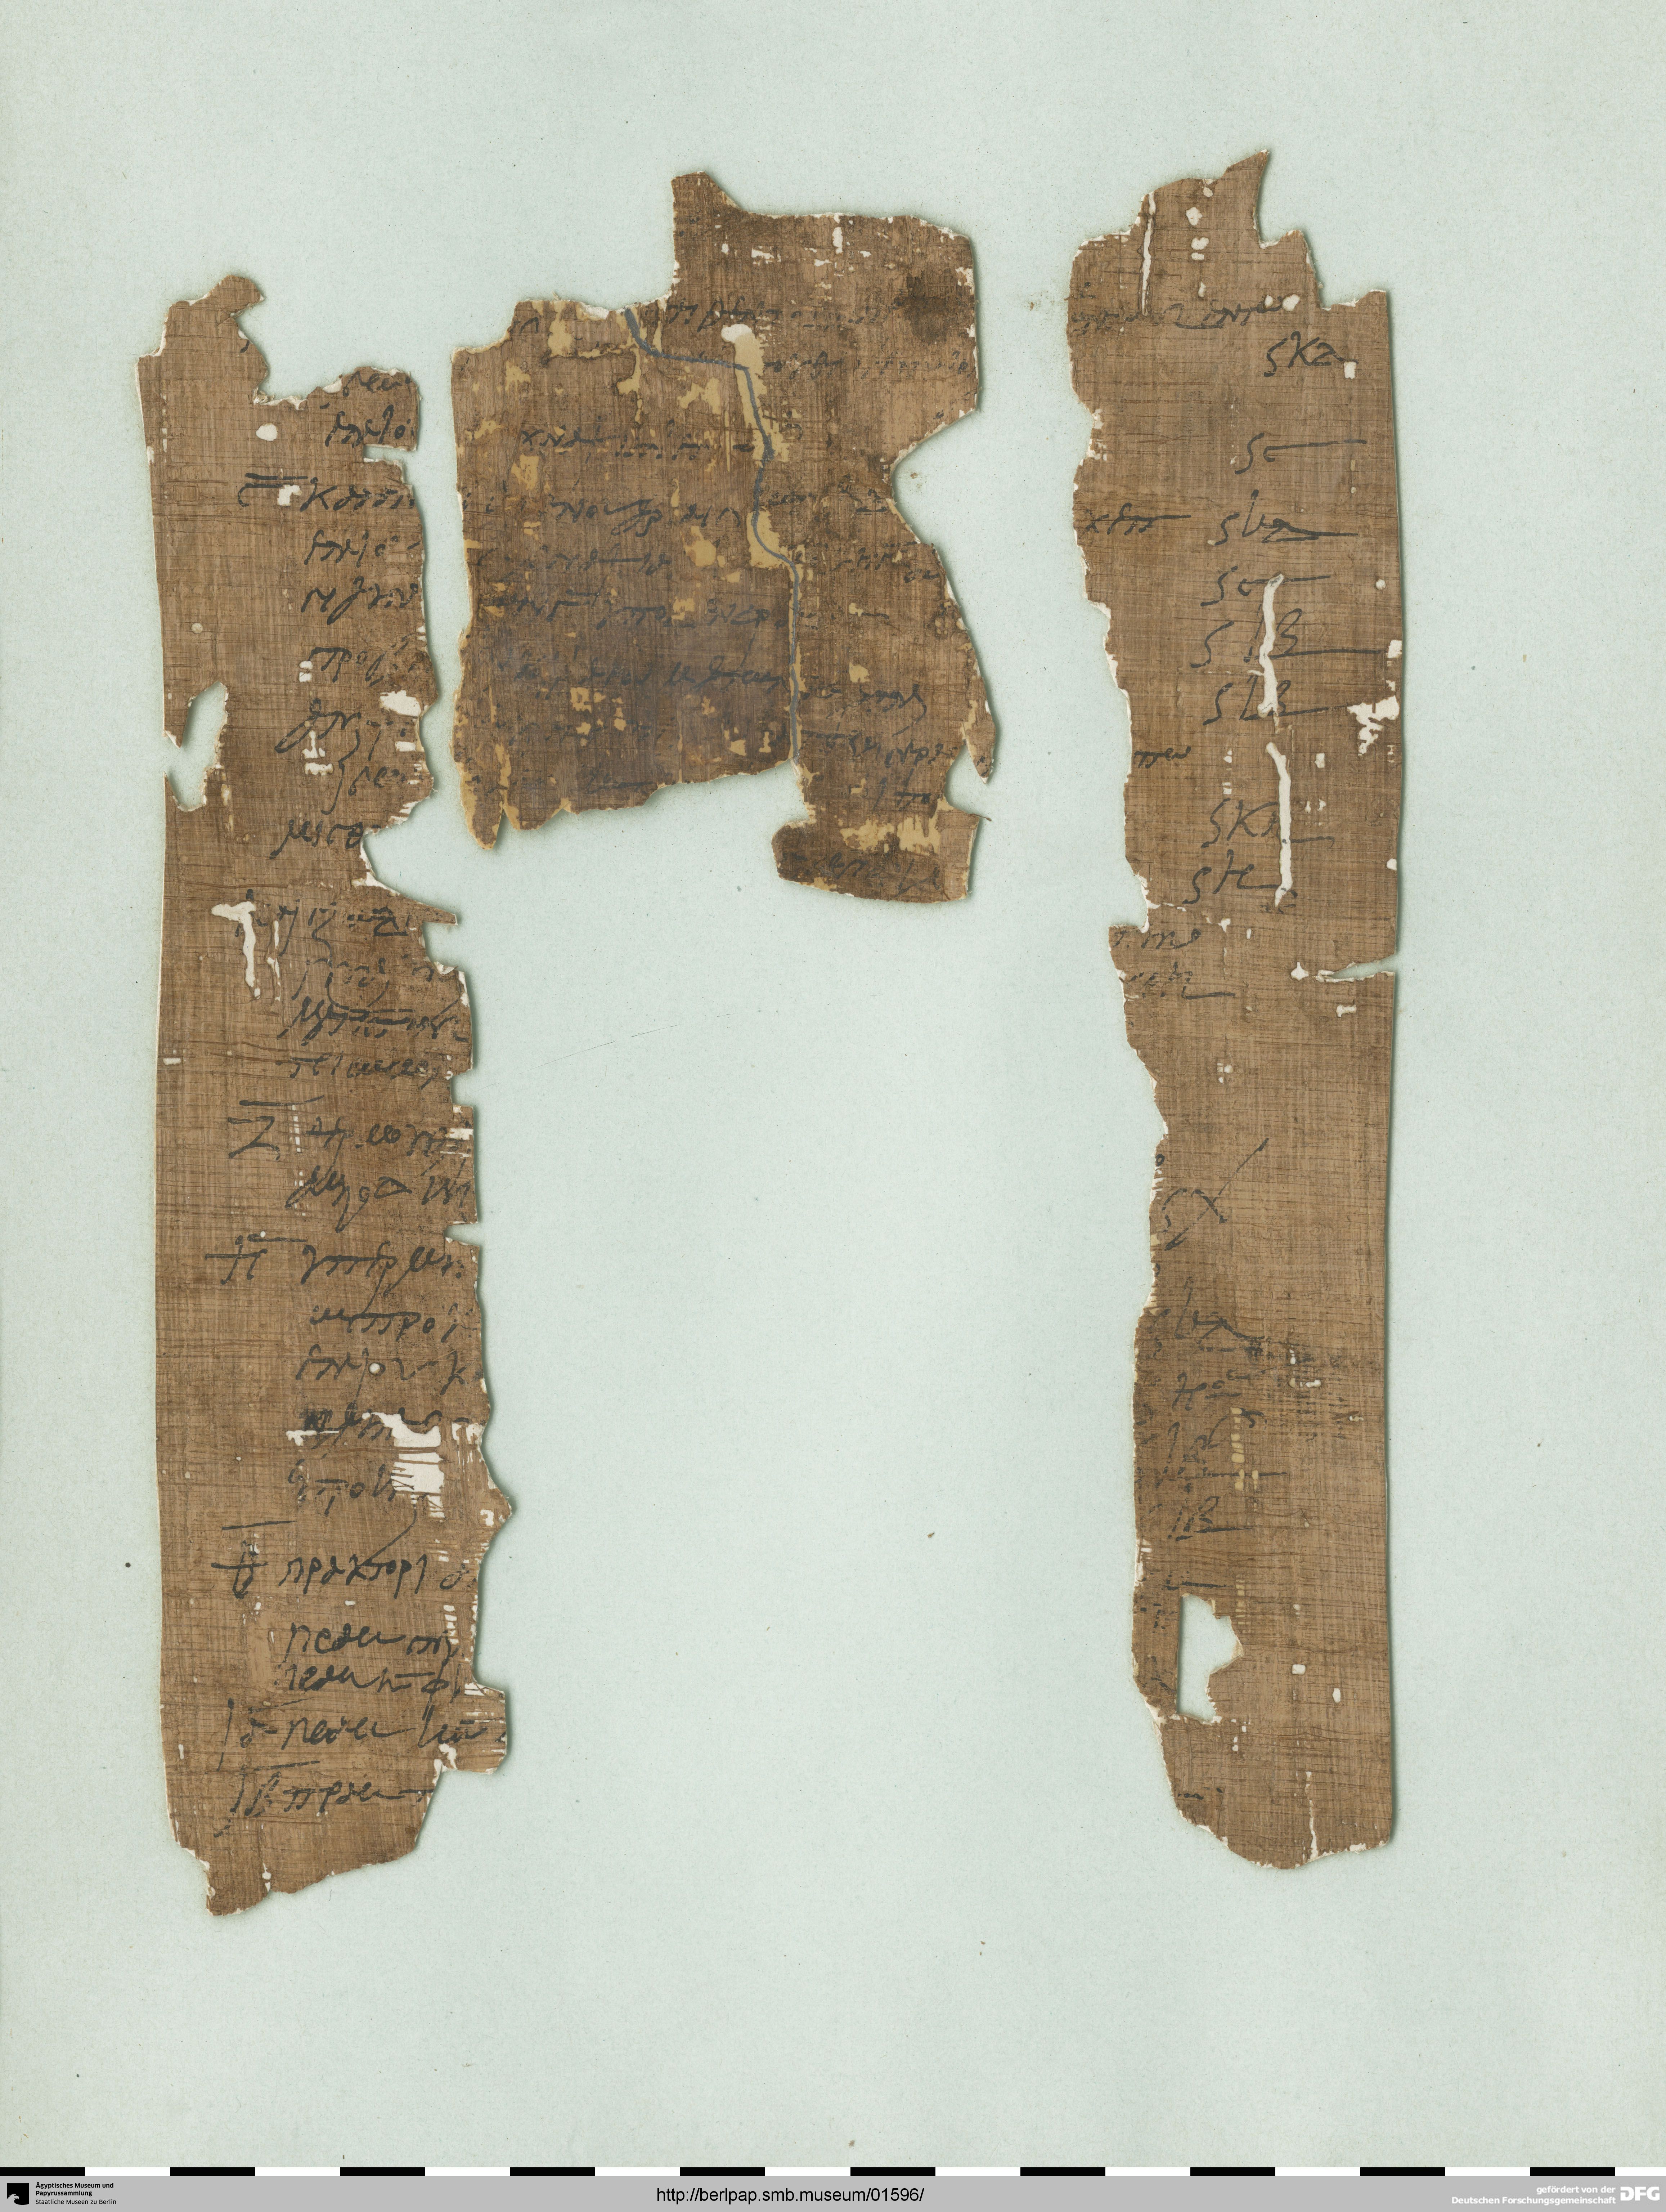 http://berlpap.smb.museum/Original/P_05081_R_001.jpg (Ägyptisches Museum und Papyrussammlung, Staatliche Museen zu Berlin CC BY-NC-SA)